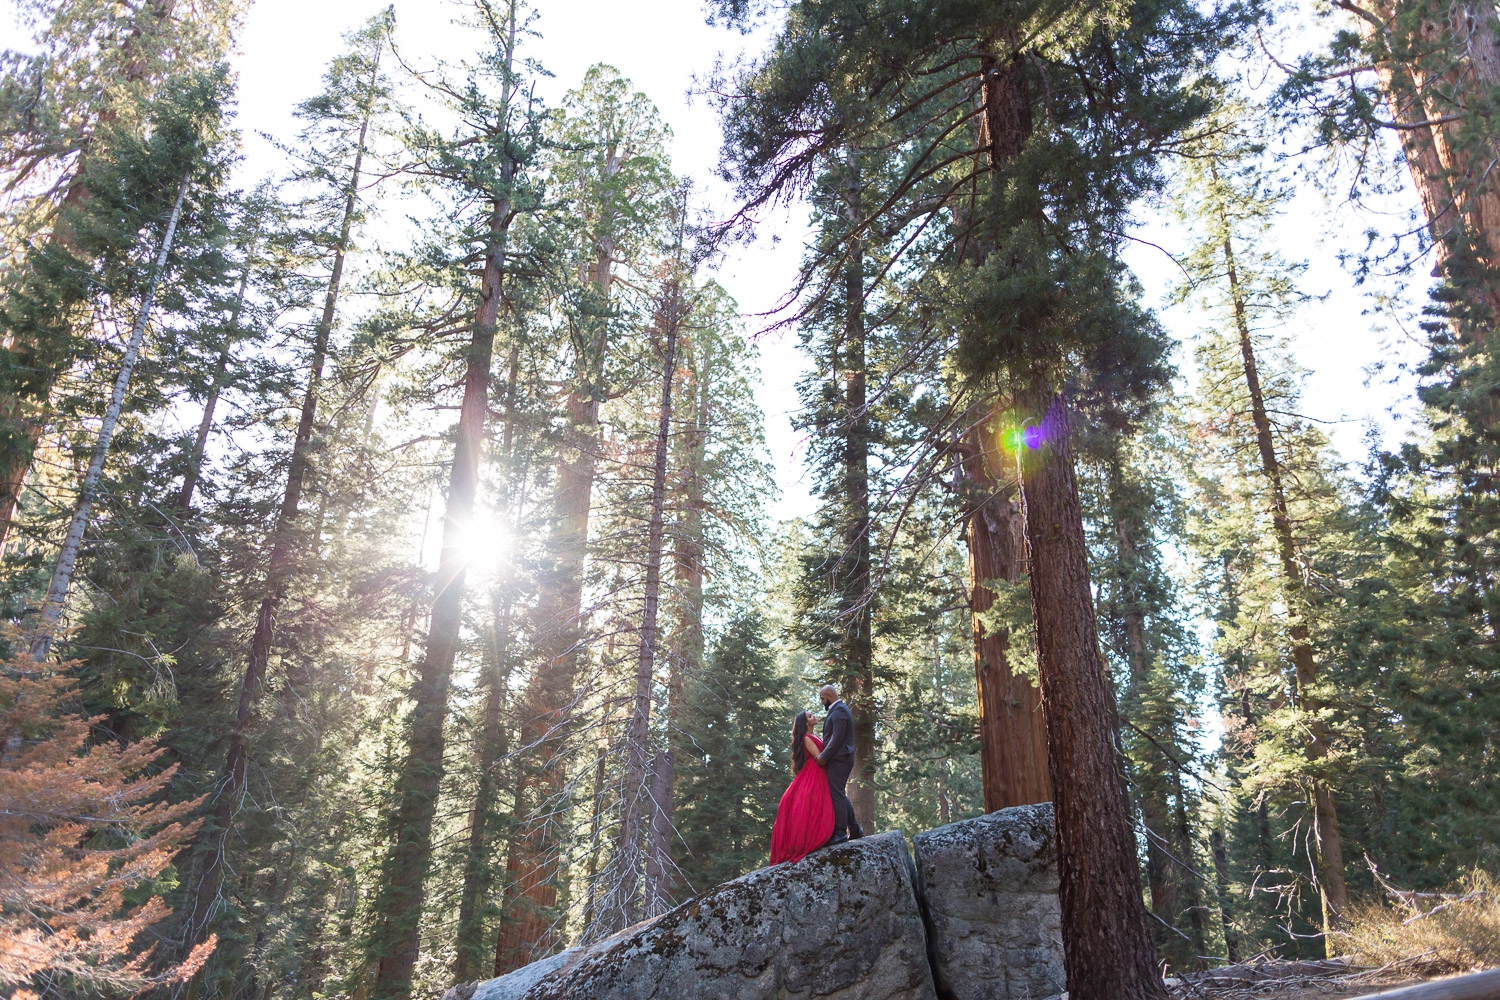 Romantic Sequoia Tree Engagement Photography